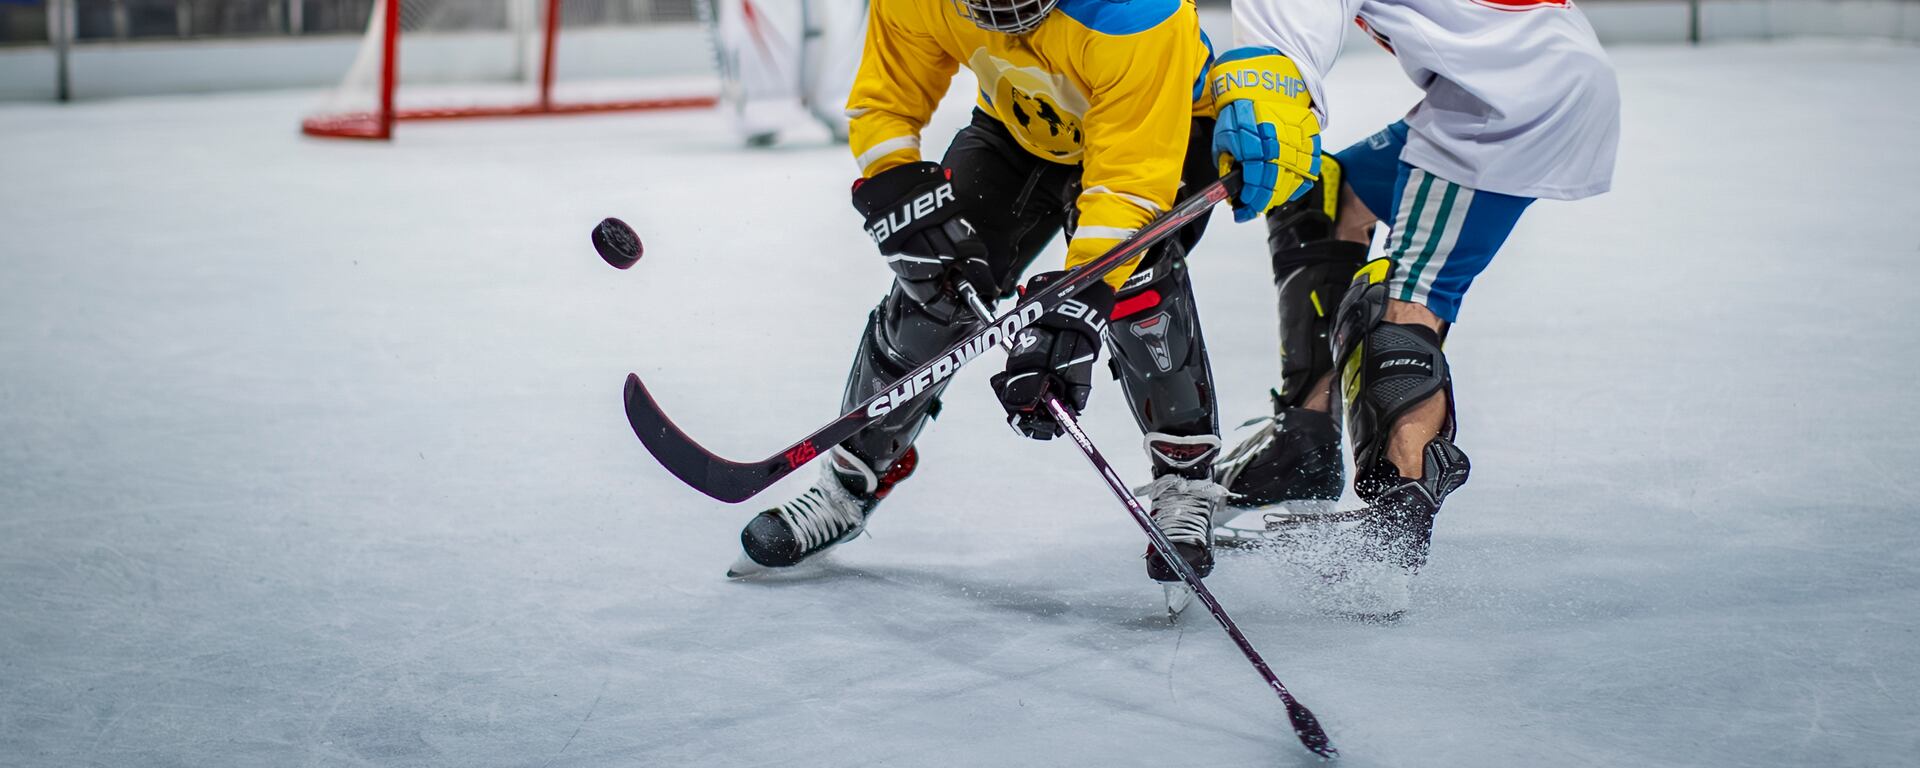 El hockey sobre hielo gana nuevos adeptos: ¿qué tan viable es practicar este deporte en el Perú?  